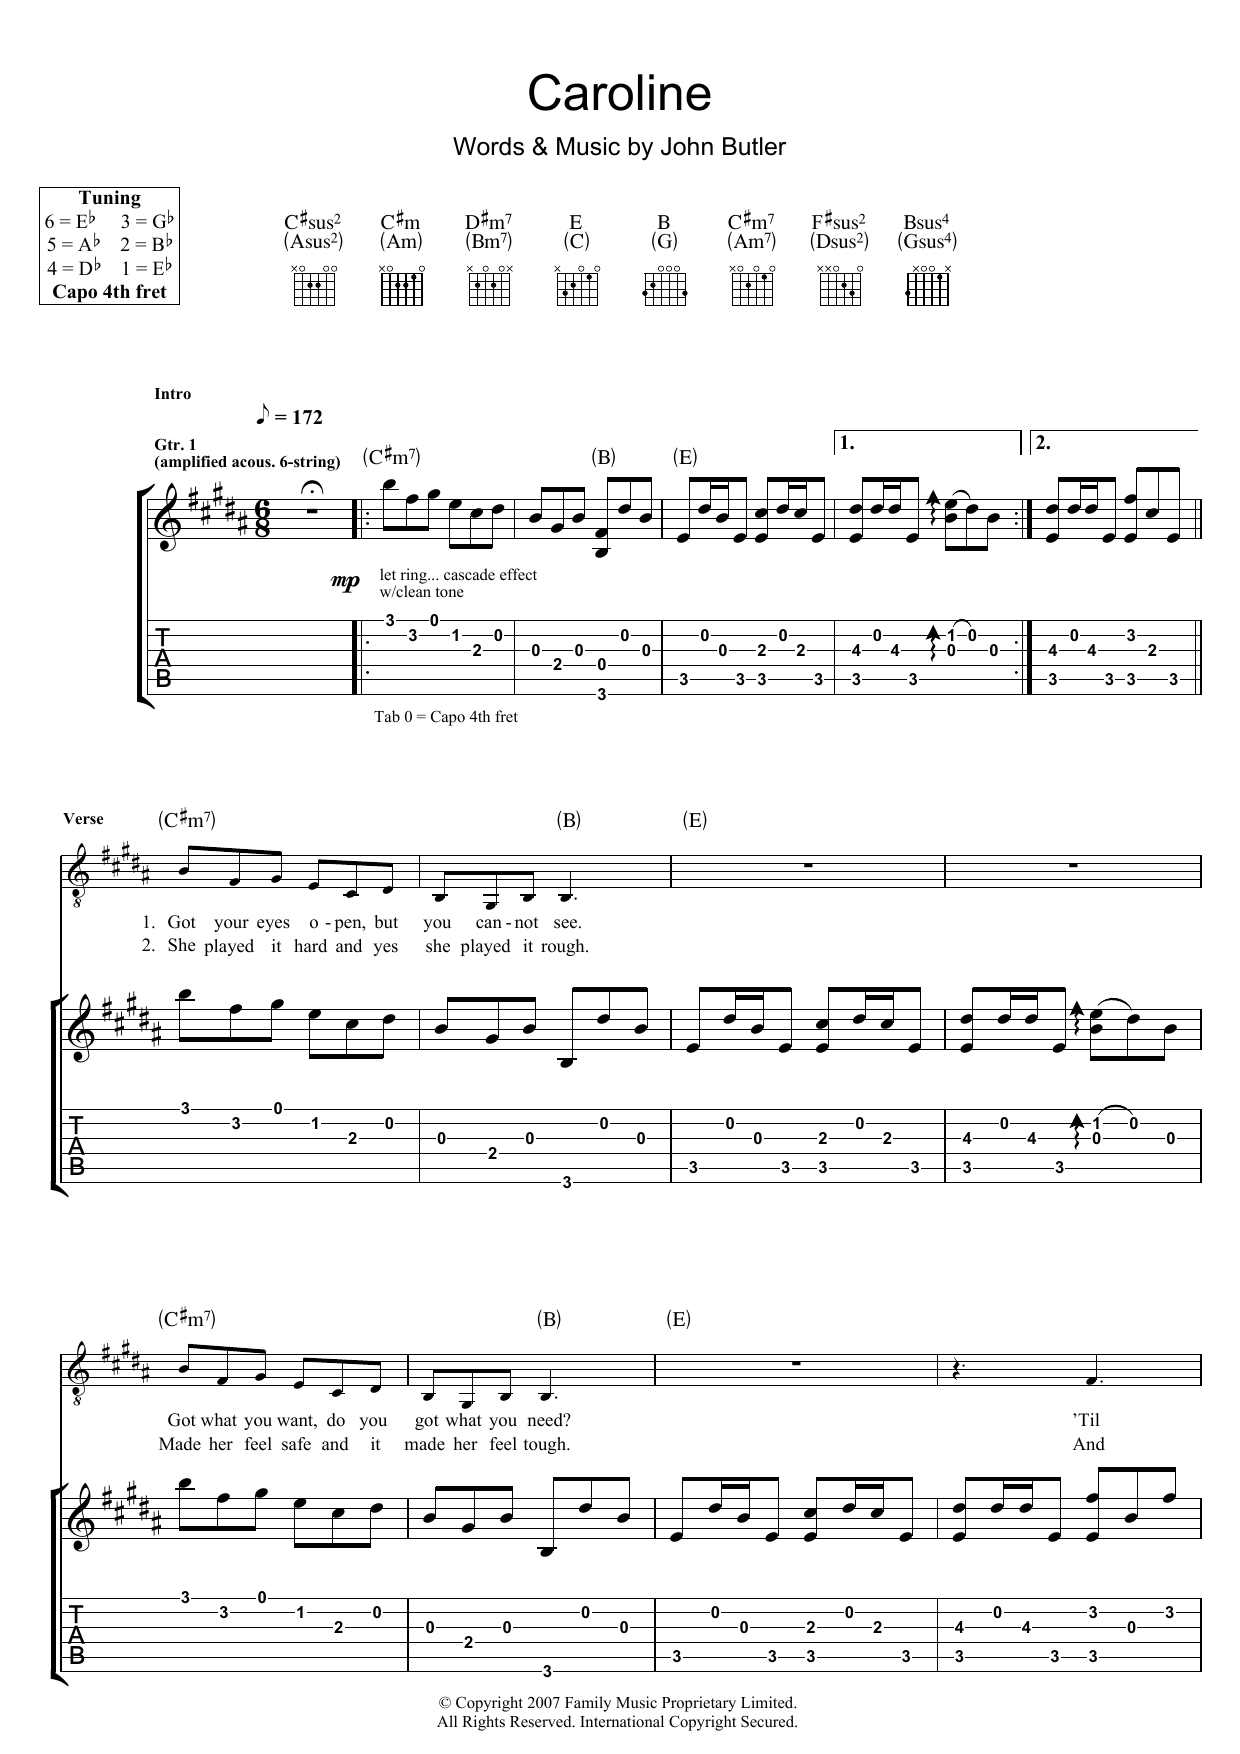 John Butler Caroline Sheet Music Notes & Chords for Guitar Tab - Download or Print PDF